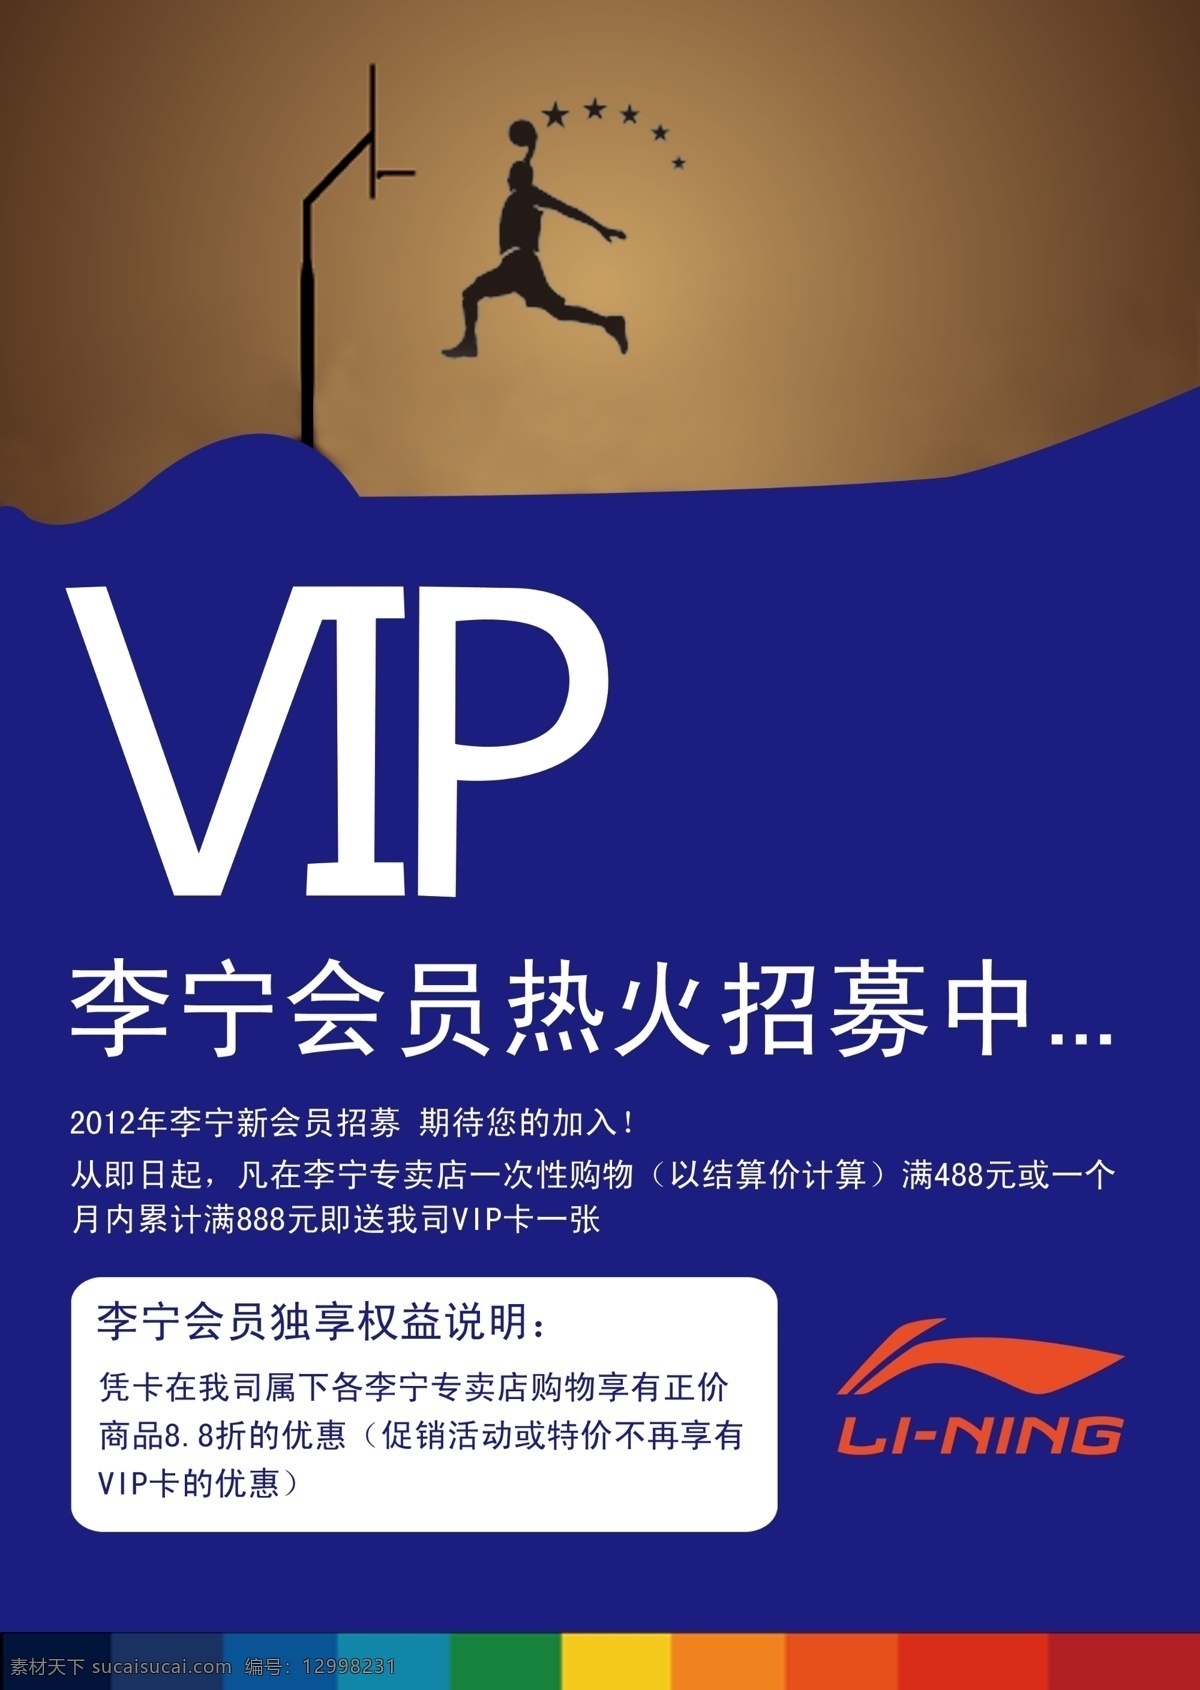 广告设计模板 源文件 李宁 vip 招募 海报 模板下载 中 打篮球的人 李宁logo a4台卡 psd源文件